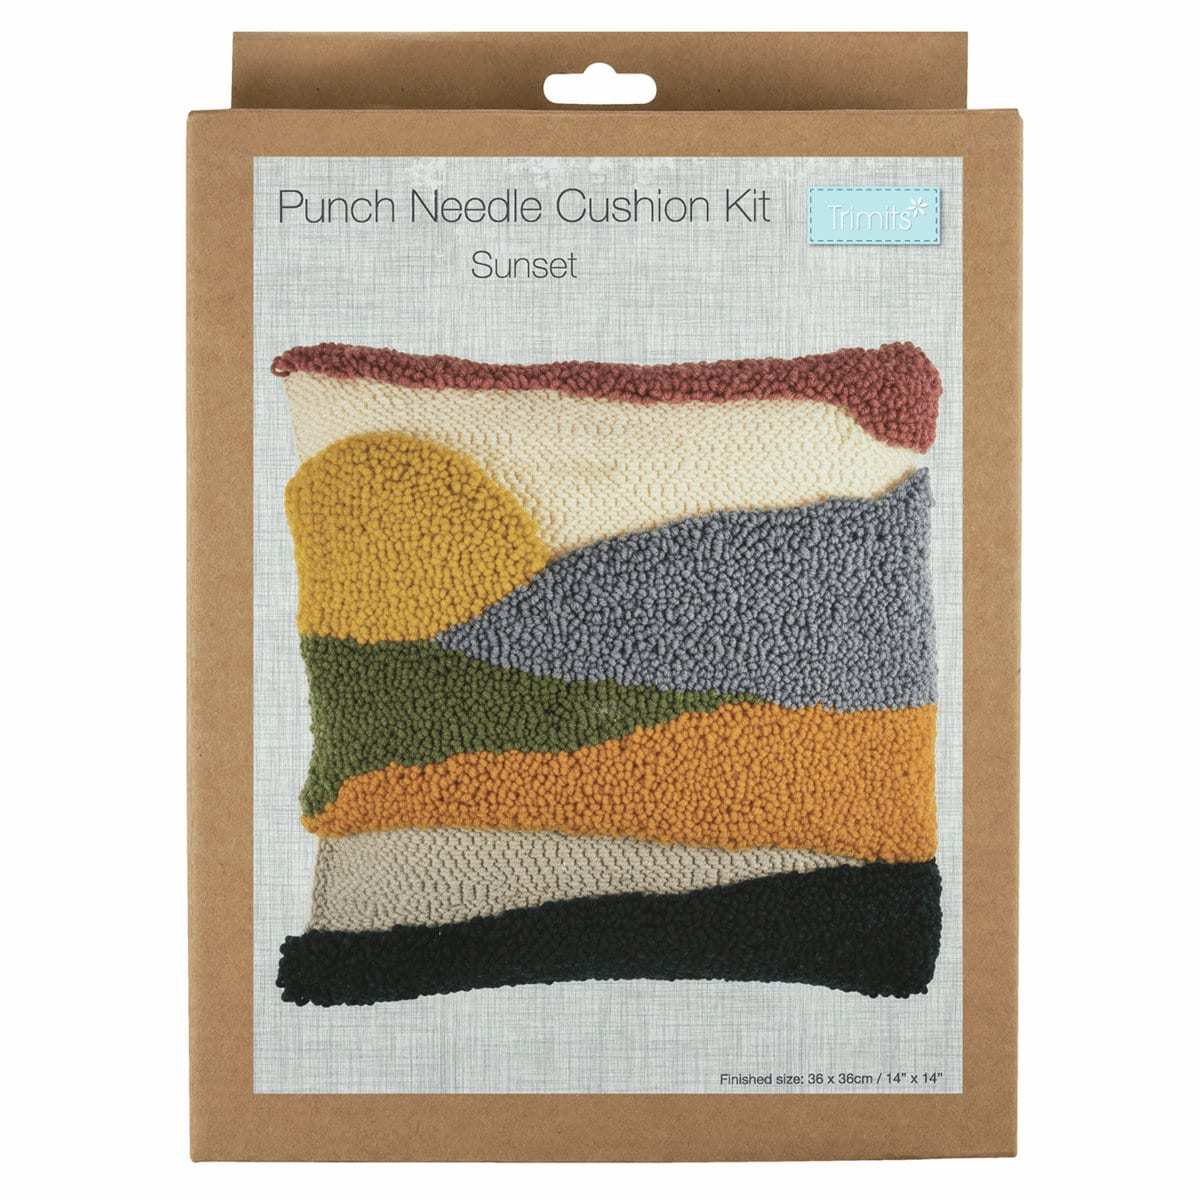 Trimits Punch Needle Kit Cushion: Sunset